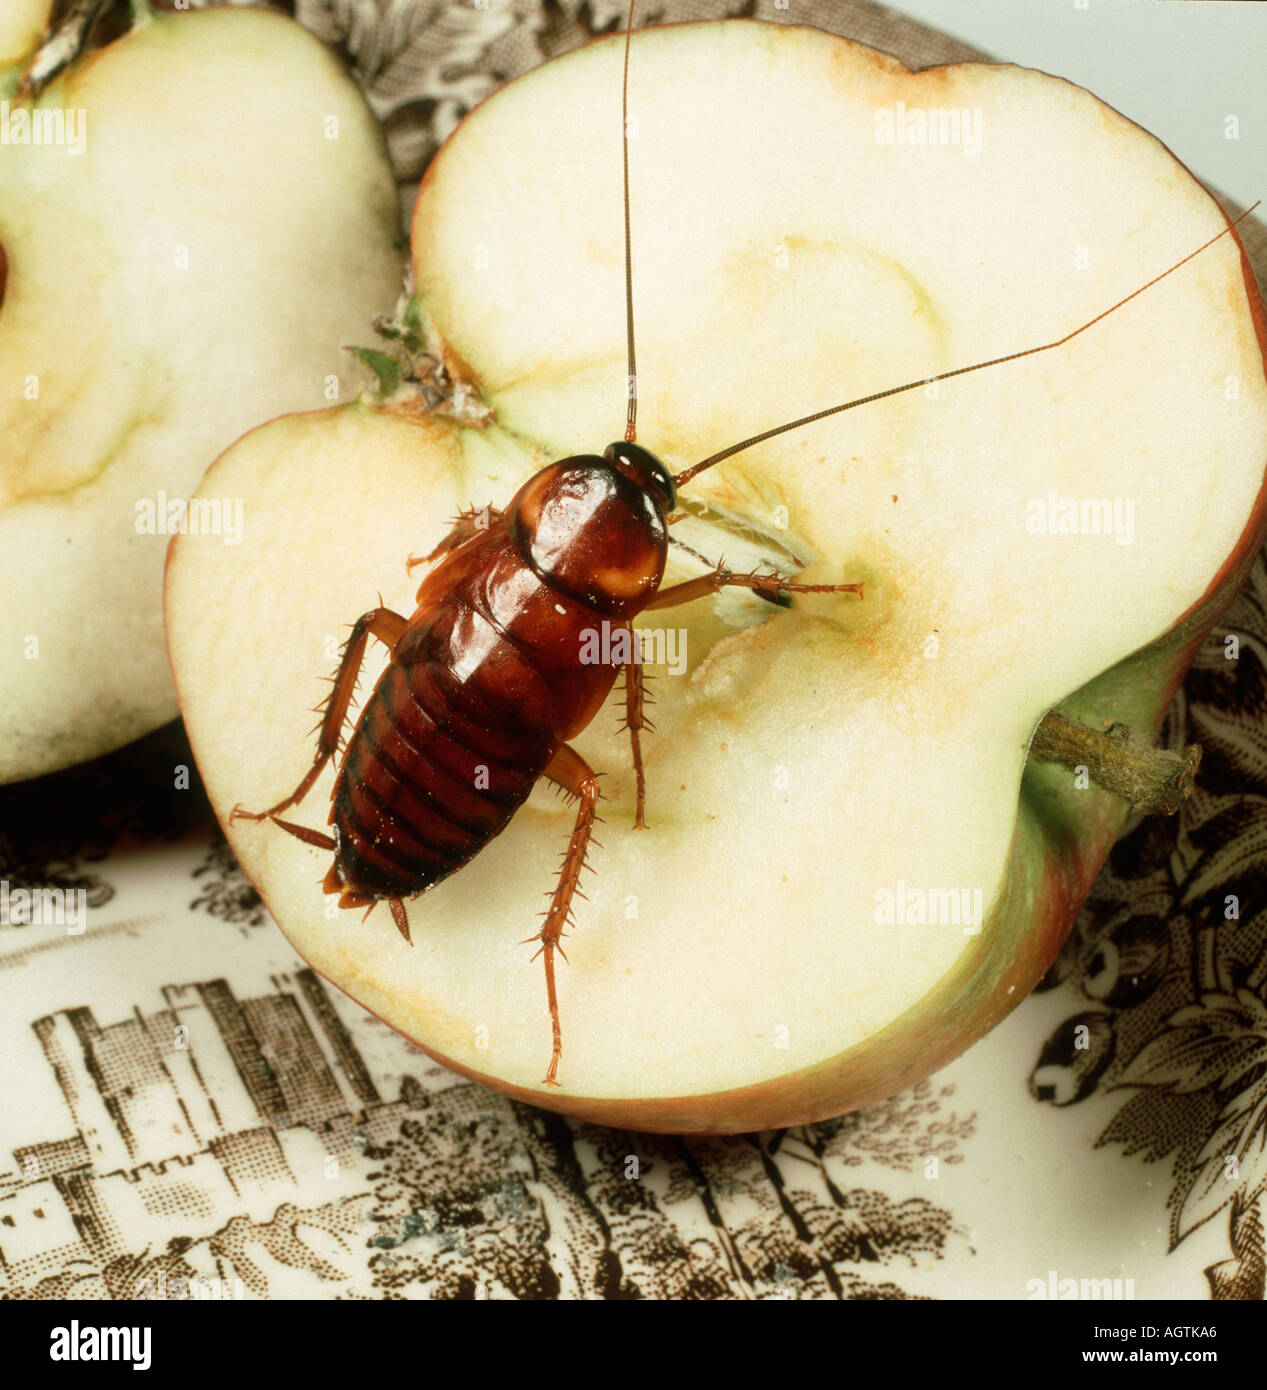 American Cockroach Periplenata americana nymph sur une pomme Banque D'Images